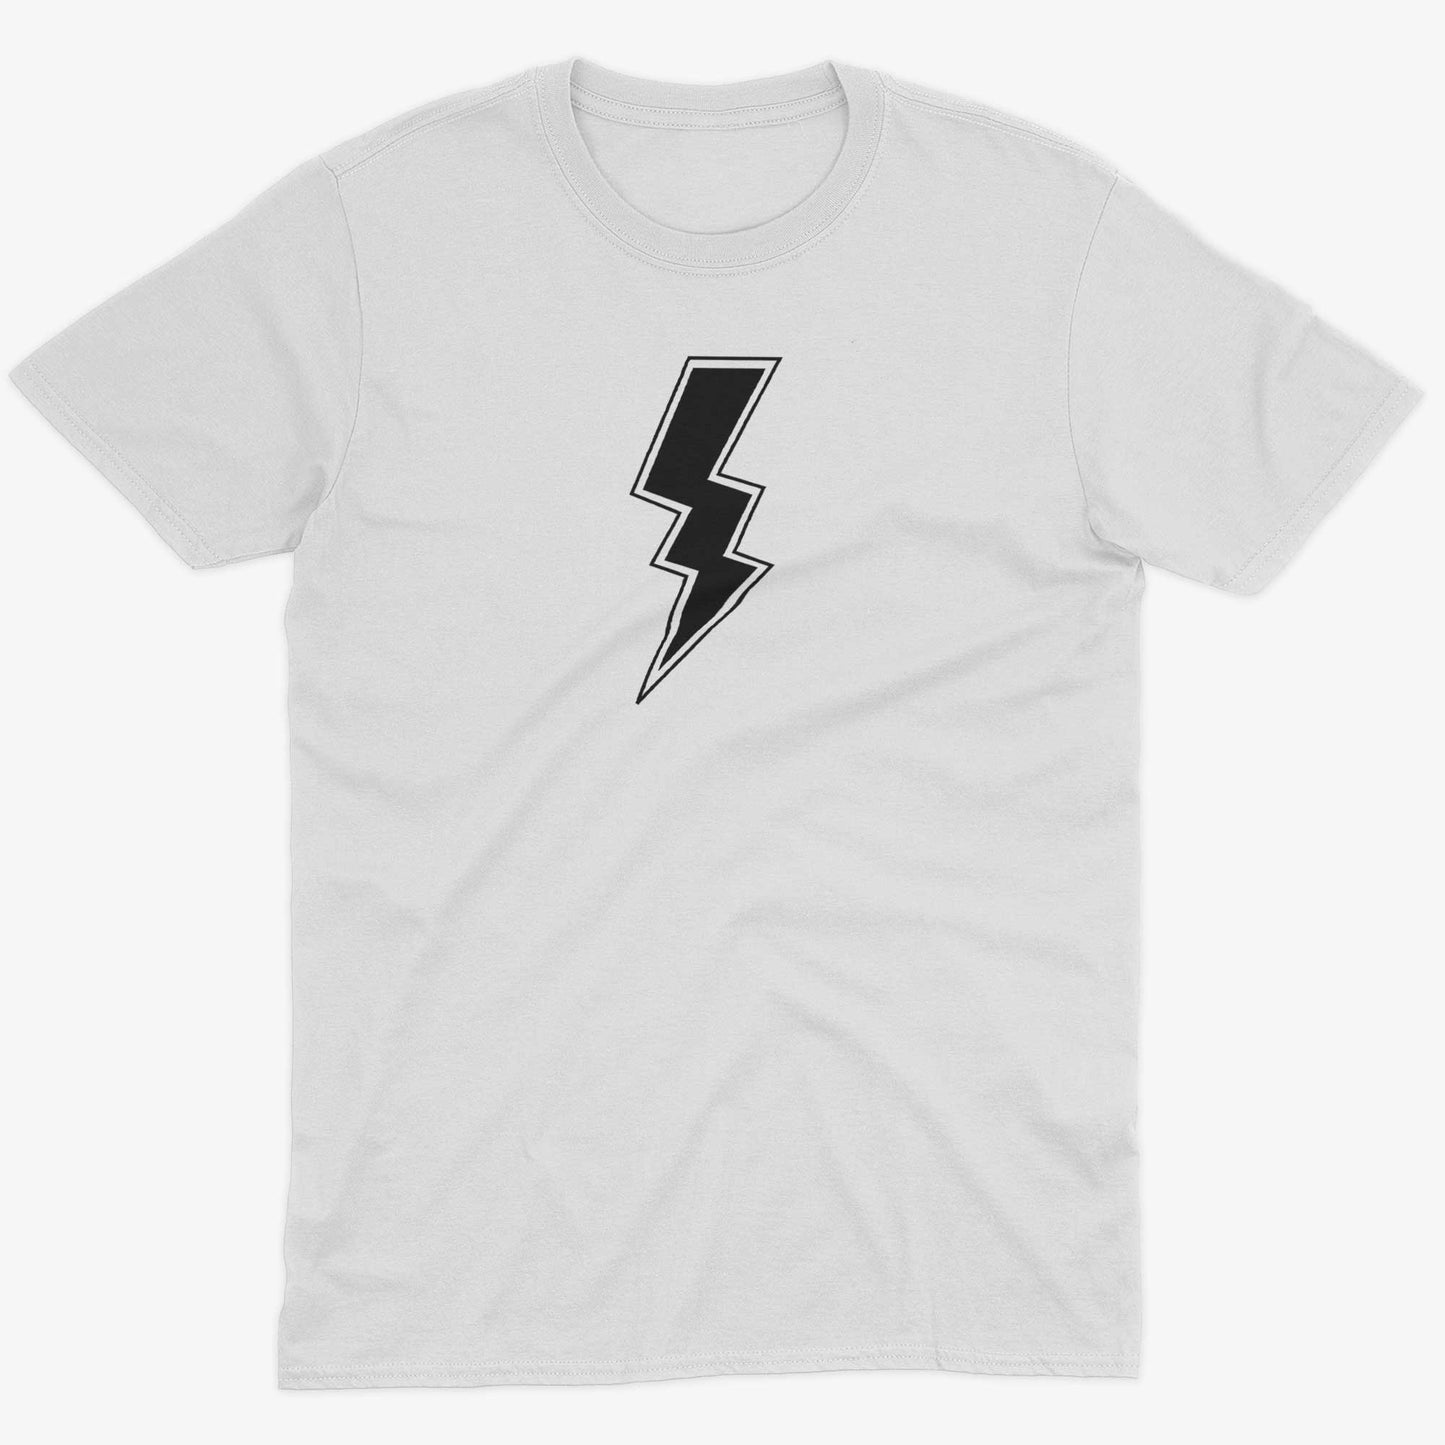 Giant Lightning Bolt Unisex Or Women's Cotton T-shirt-White-Unisex